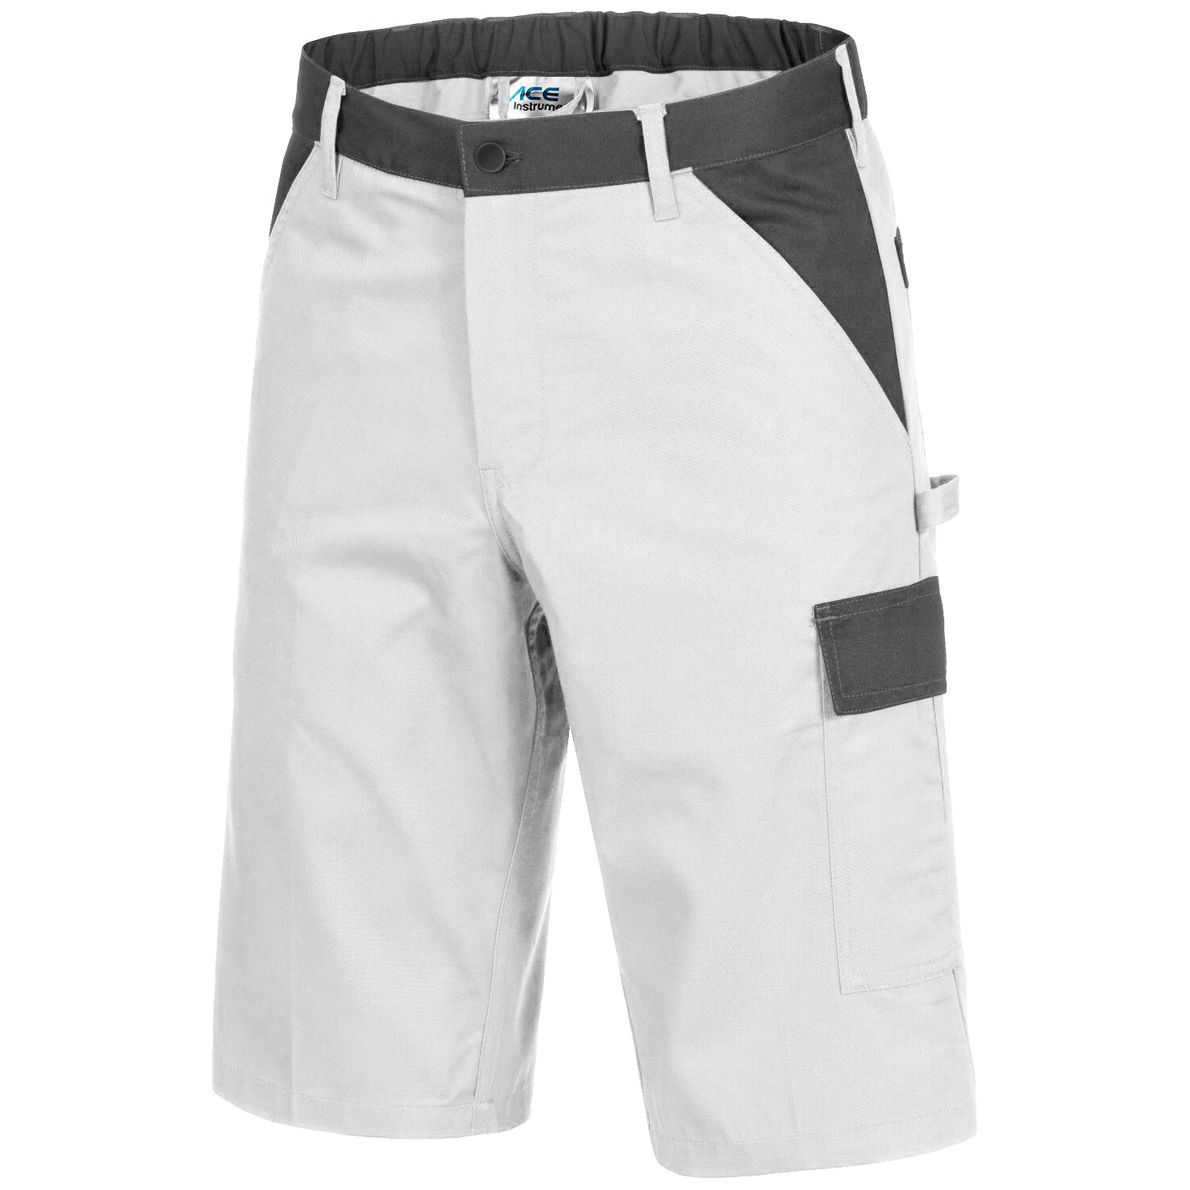 ACE Handyman Maler-Arbeitshosen - Cargo-Shorts für die Arbeit - Weiß - 52